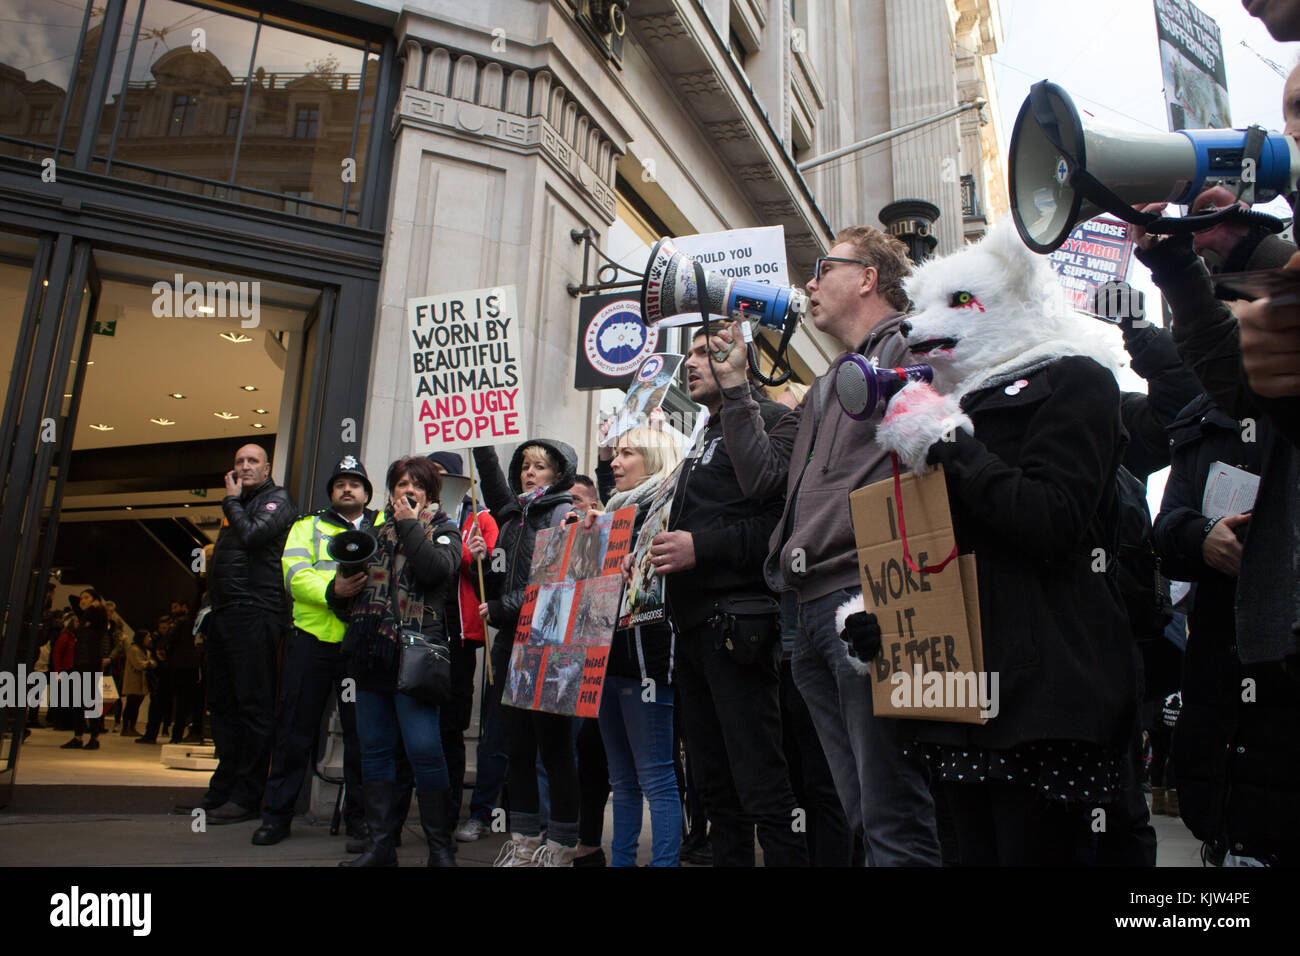 Londra, Regno Unito. 25 nov, 2017. 25 novembre 2017 Londra uk animale attivista dei diritti ha tenuto un prostest contro il Canada Goose al di fuori del loro negozio su Regent street london credit: emin ozkan/alamy live news Foto Stock